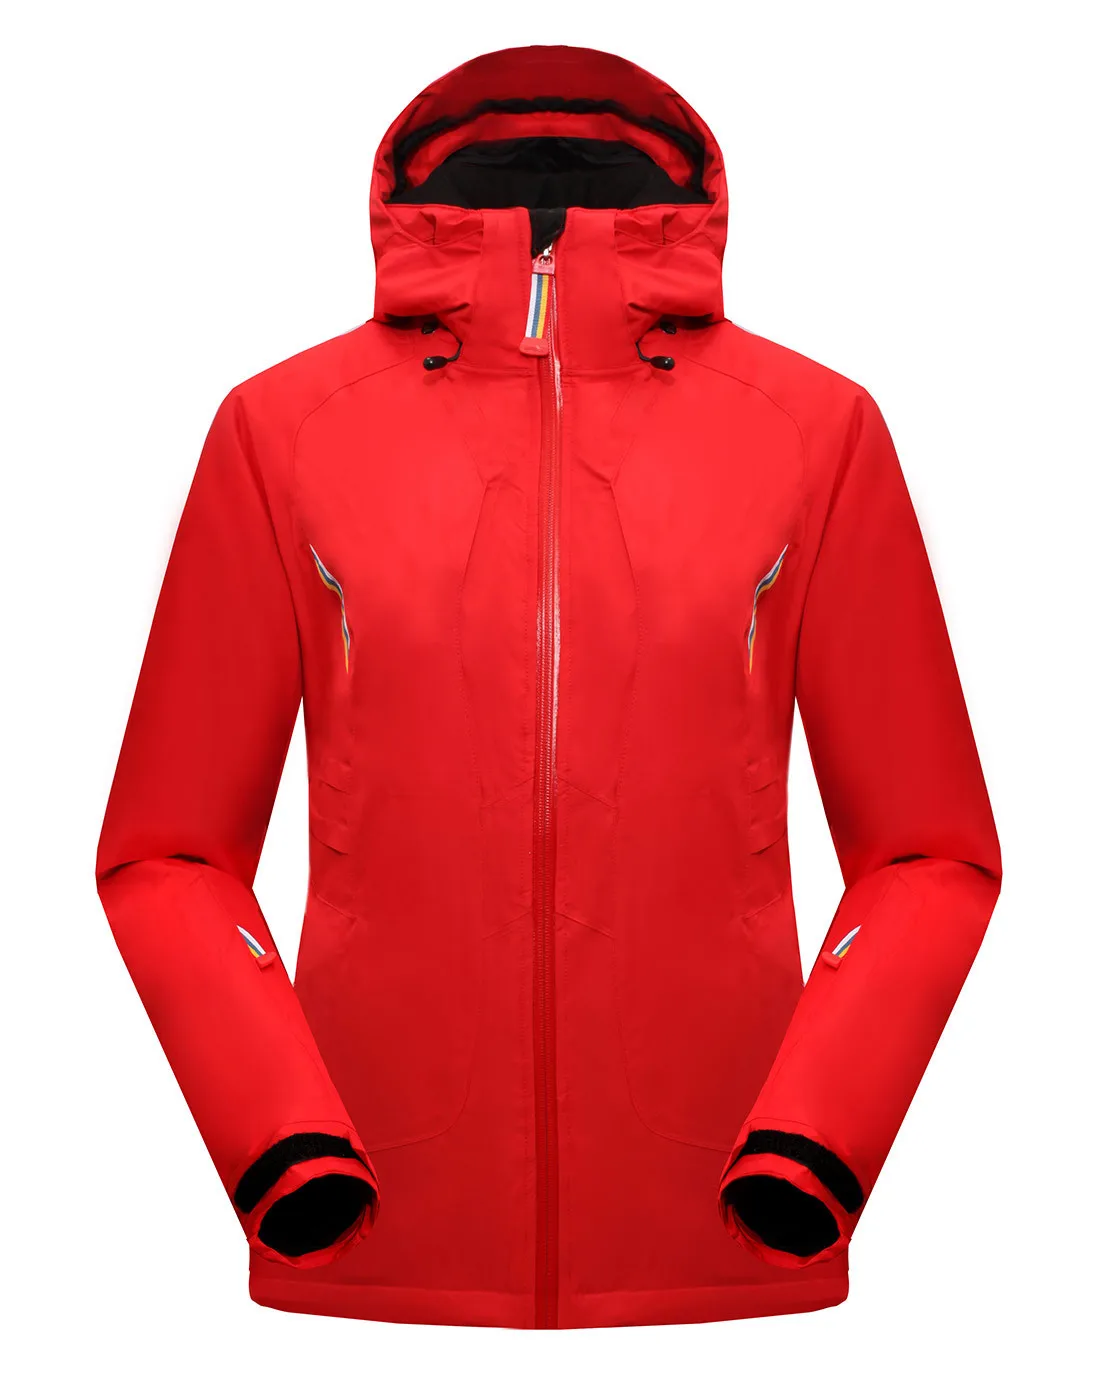 Royalway Для женщин Лыжный Спорт Лыжный Куртки ветрозащитный Водонепроницаемый куртка регулируемый съемный дышащий Качество recco gpsjacket# RFSL4504G